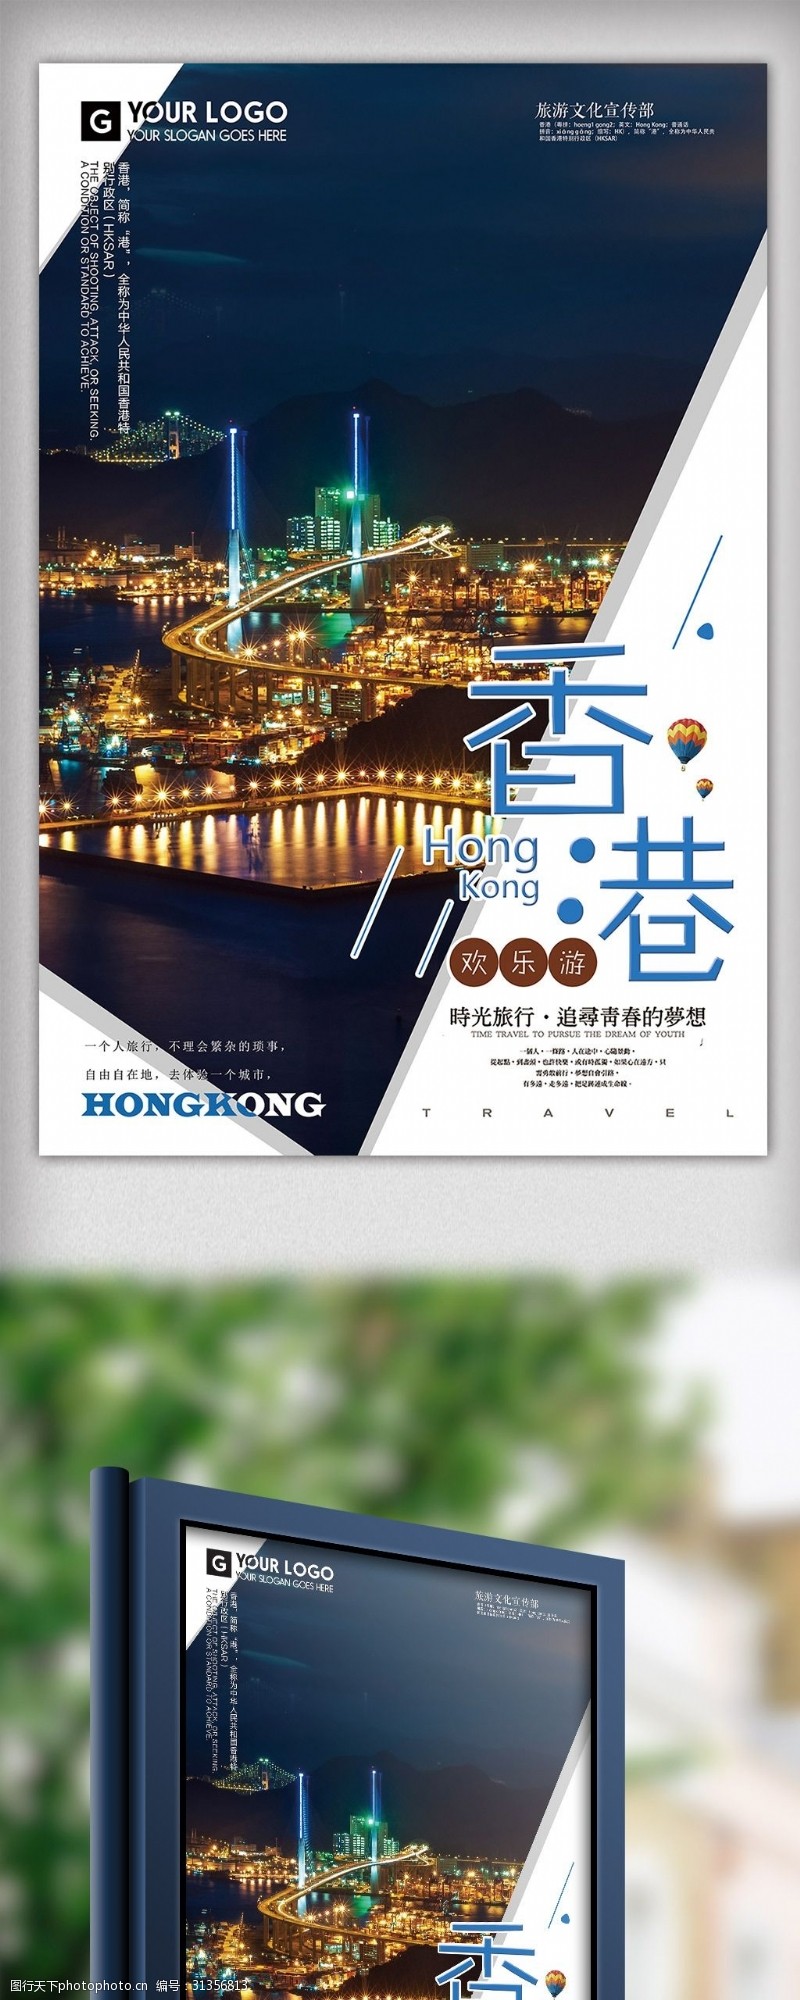 自助购物208年蓝色大气简洁香港欢乐游海报